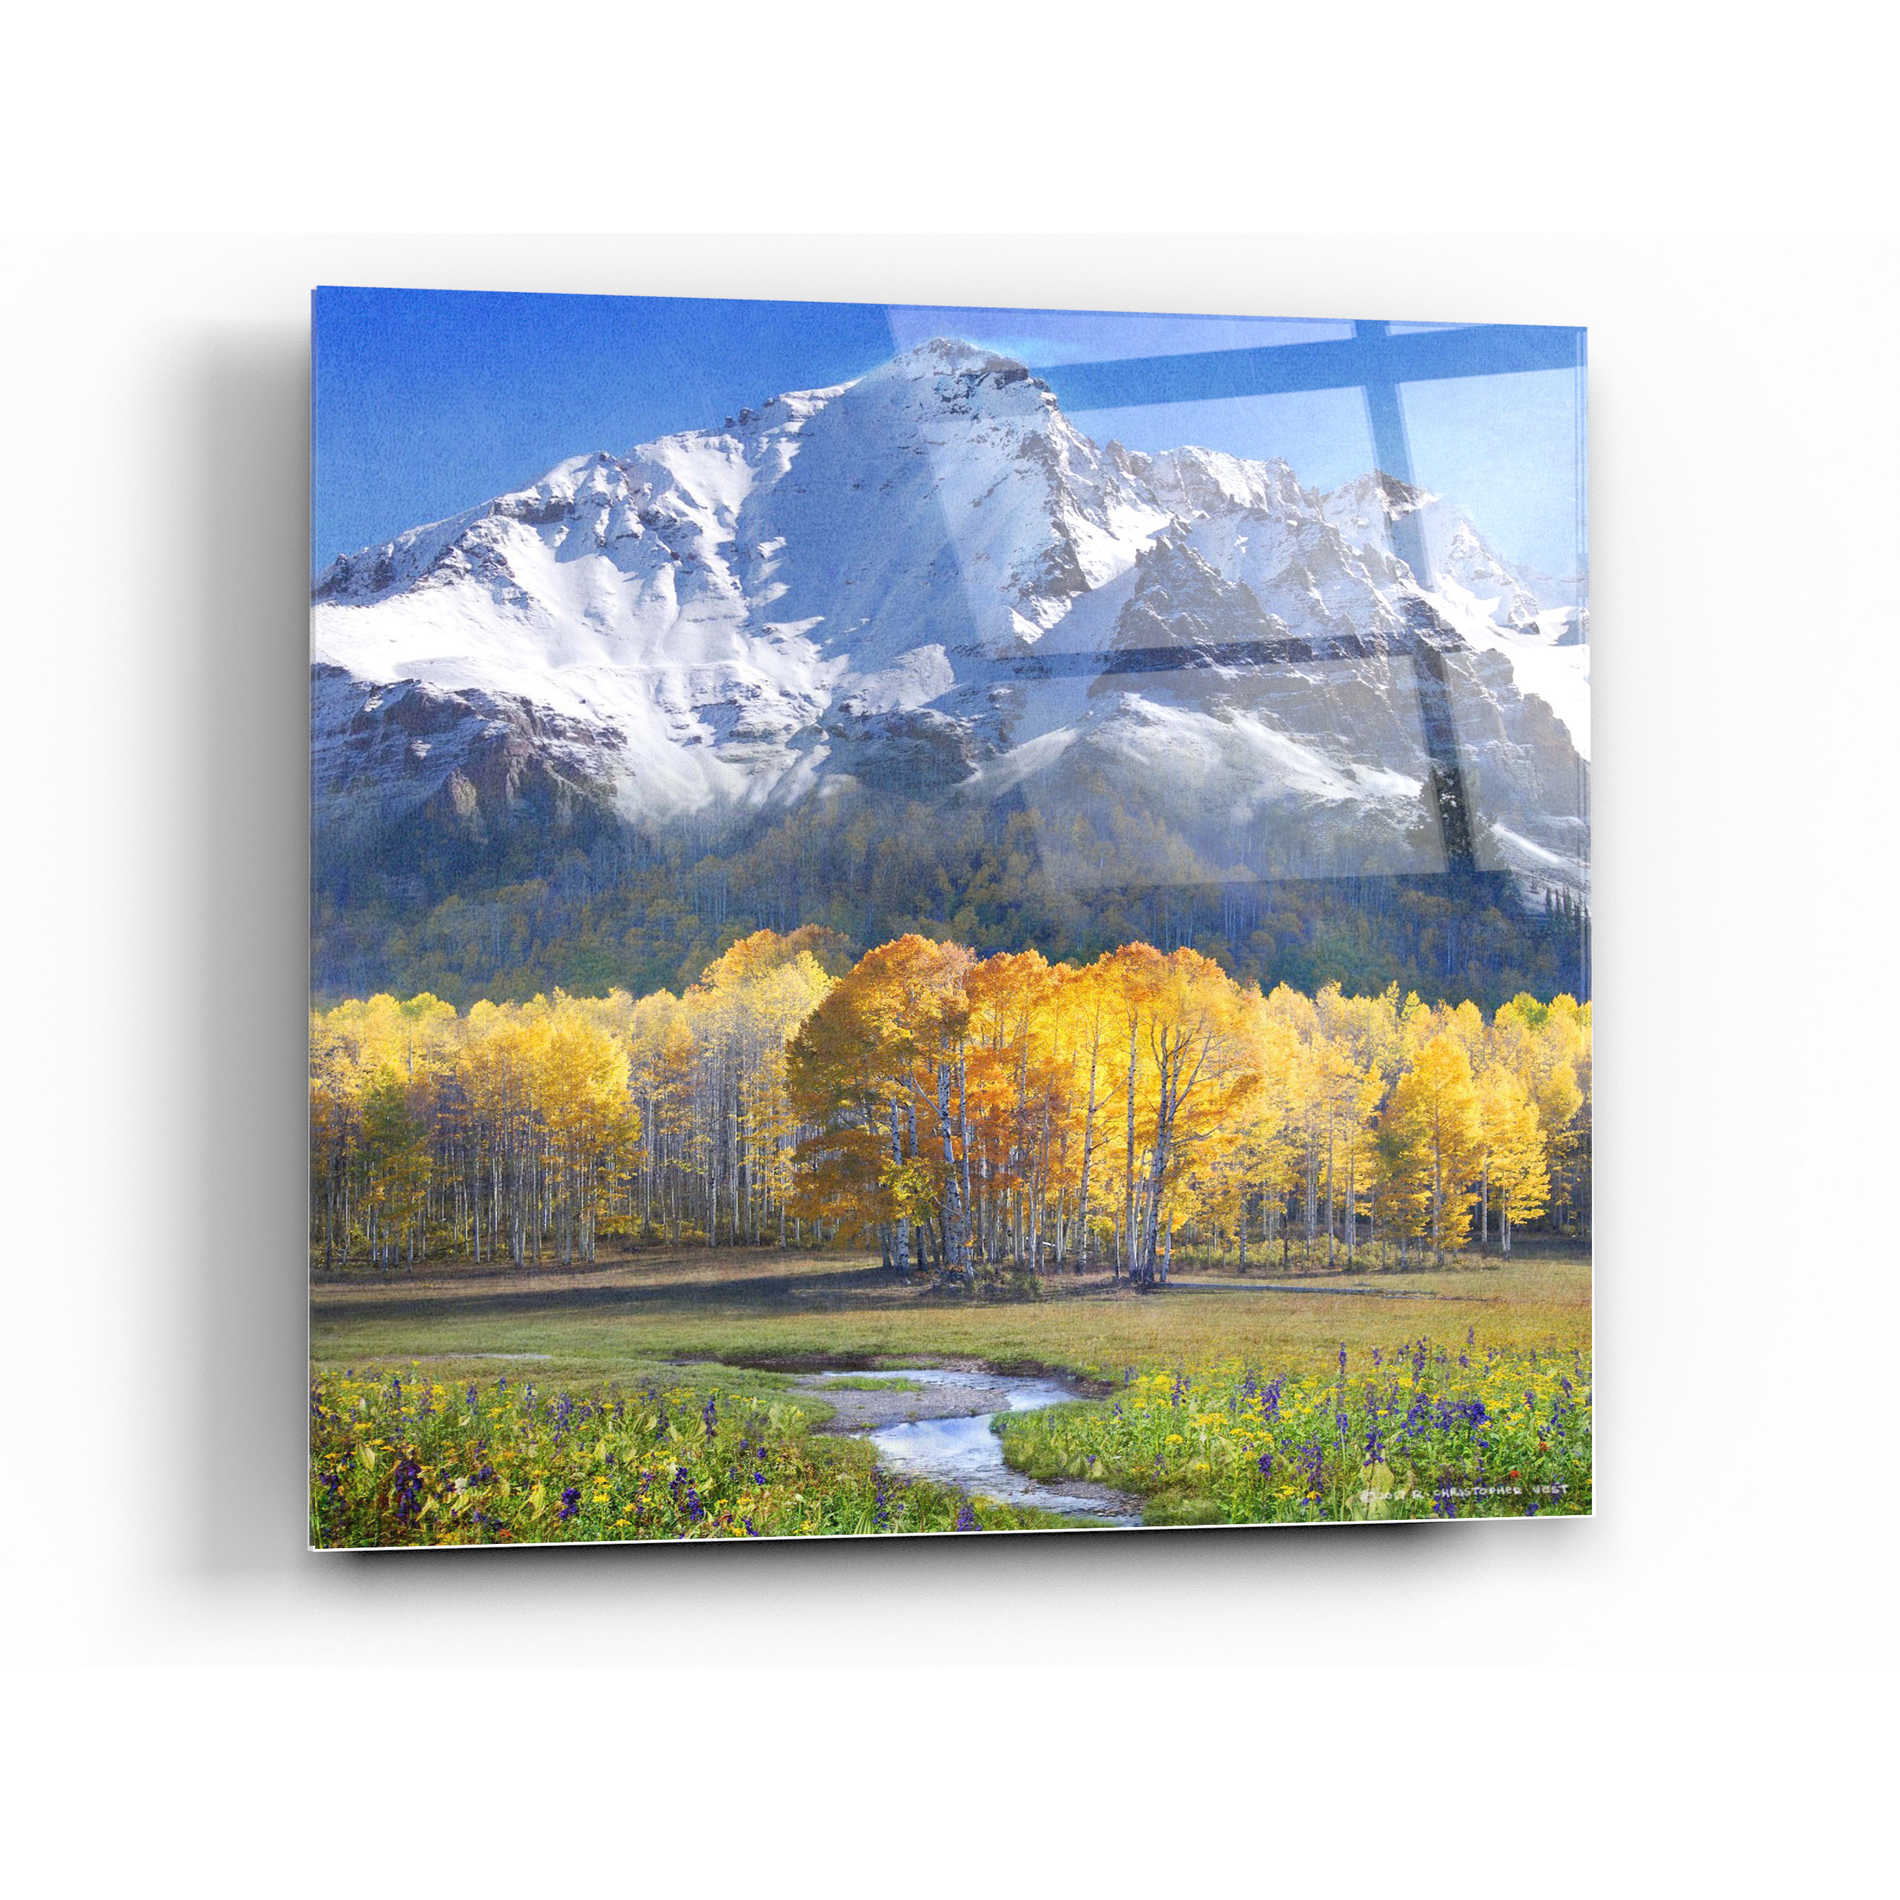 Epic Art 'Idyllic Mountain' by Chris Vest, Acrylic Glass Wall Art,12x12